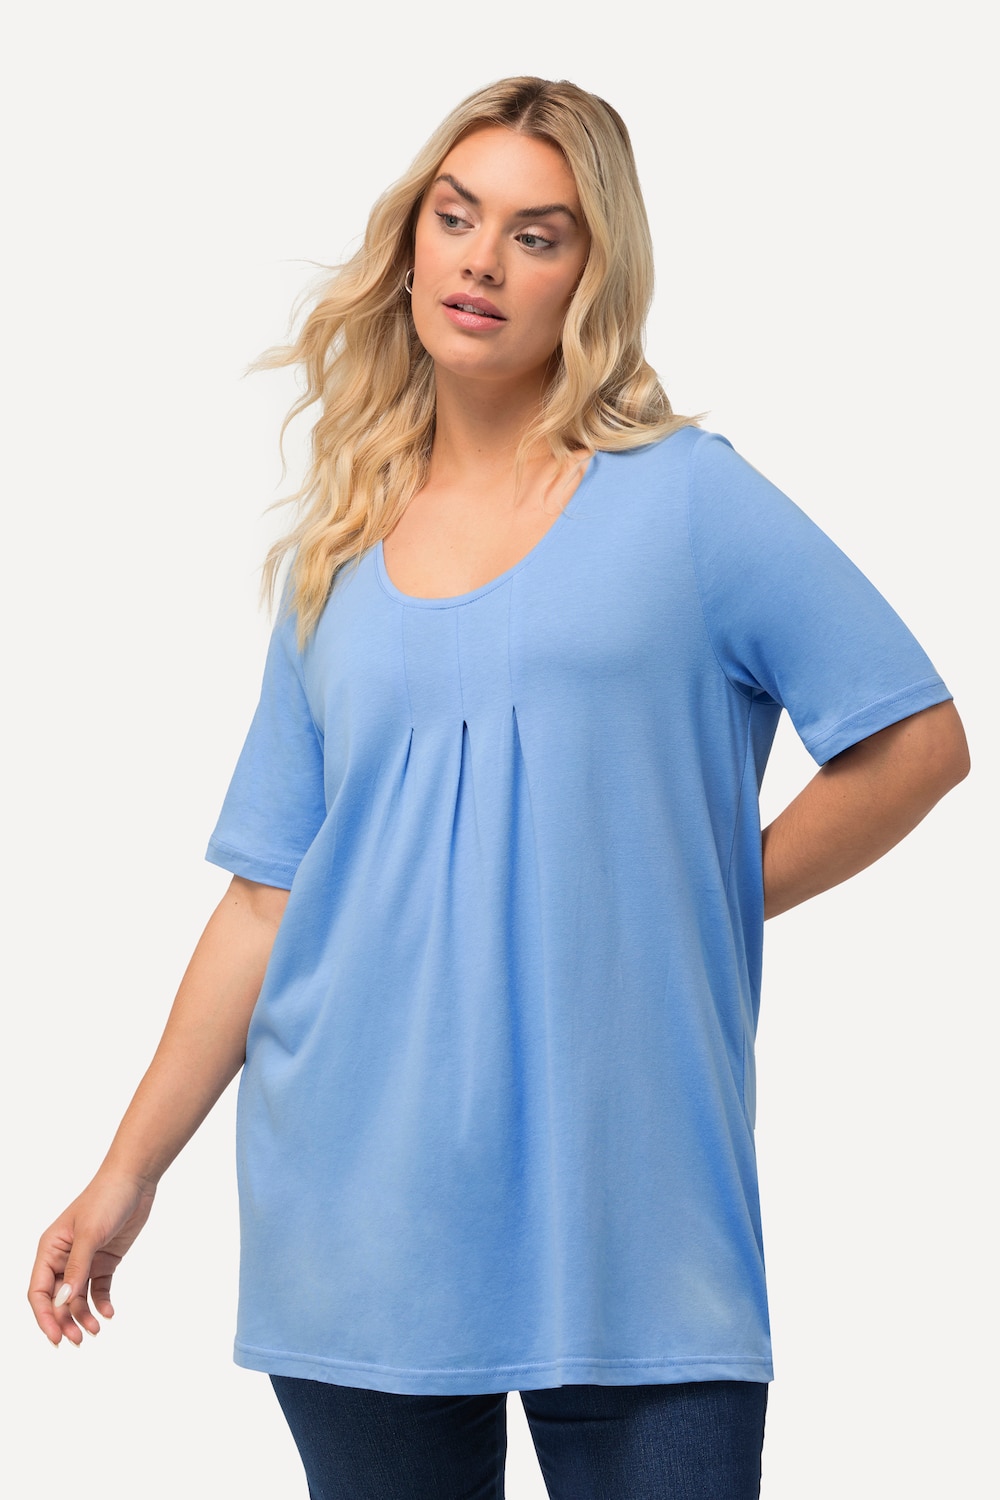 Grote Maten T-Shirt, Dames, blauw, Maat: 42/44, Katoen/Synthetische vezels, Ulla Popken